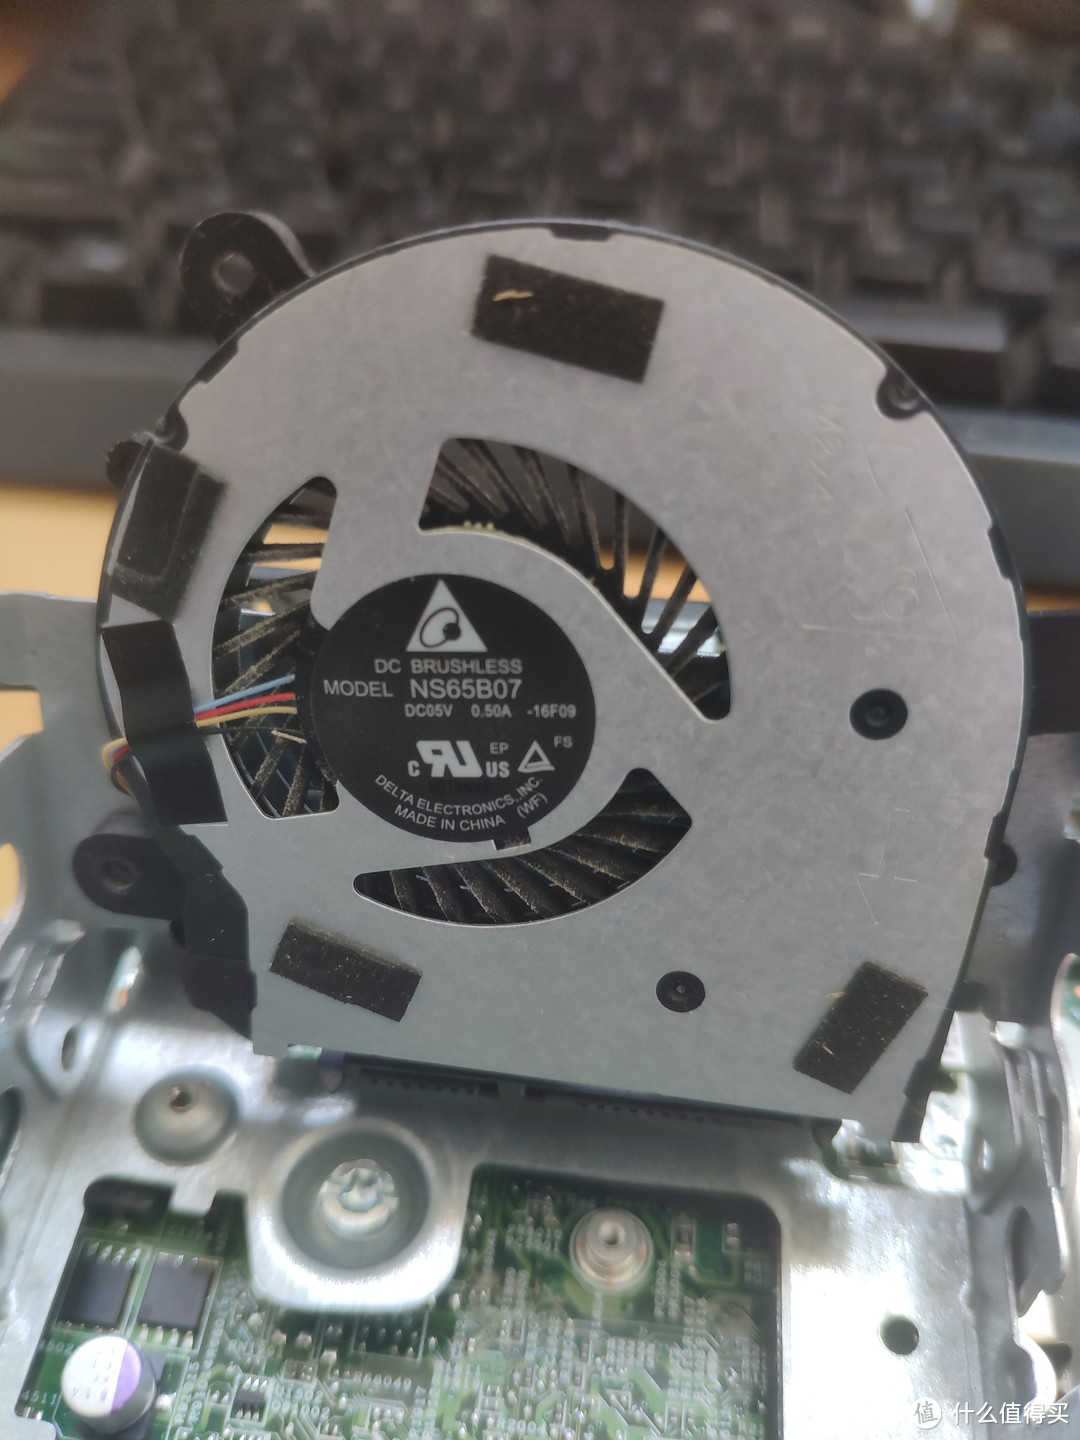 硬盘位处小风扇是5V四线的 说明它也是随温控速的